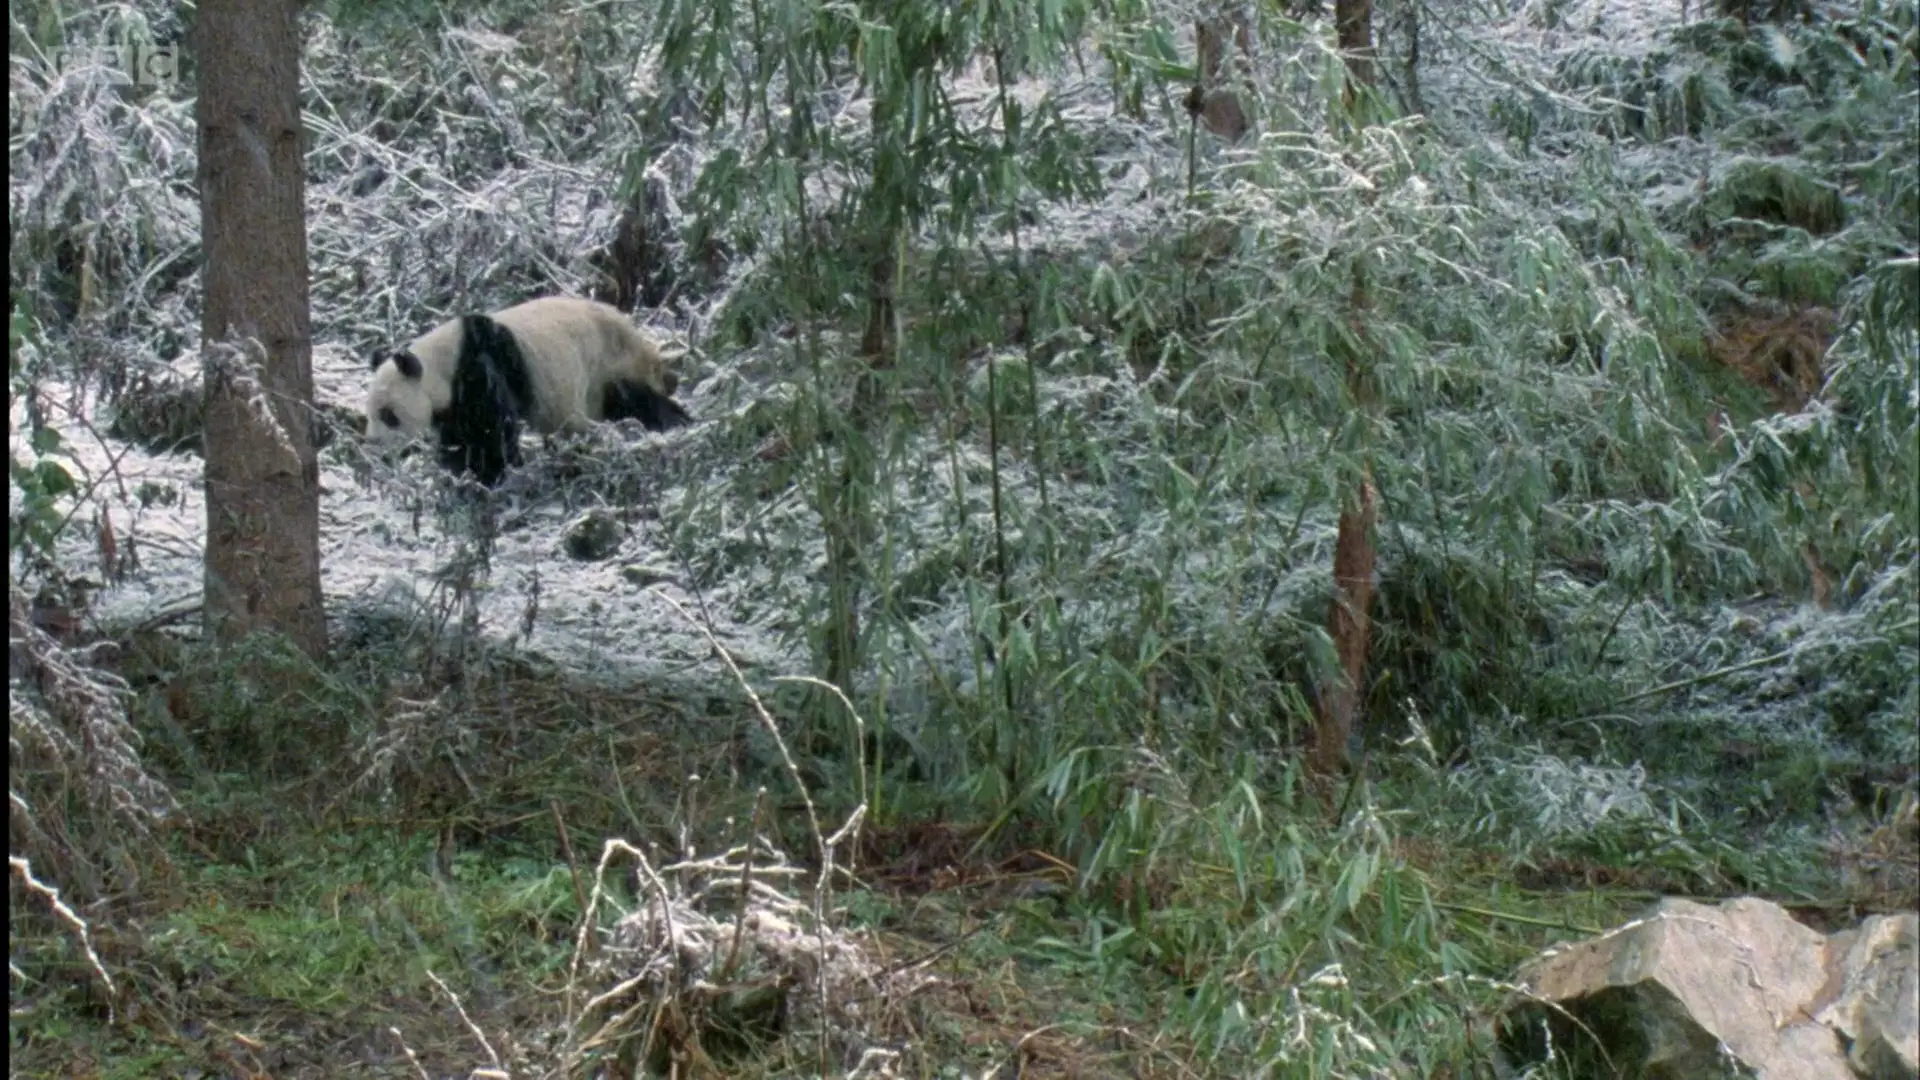 Qinling giant panda (Ailuropoda melanoleuca qinlingensis) as shown in Planet Earth - Mountains